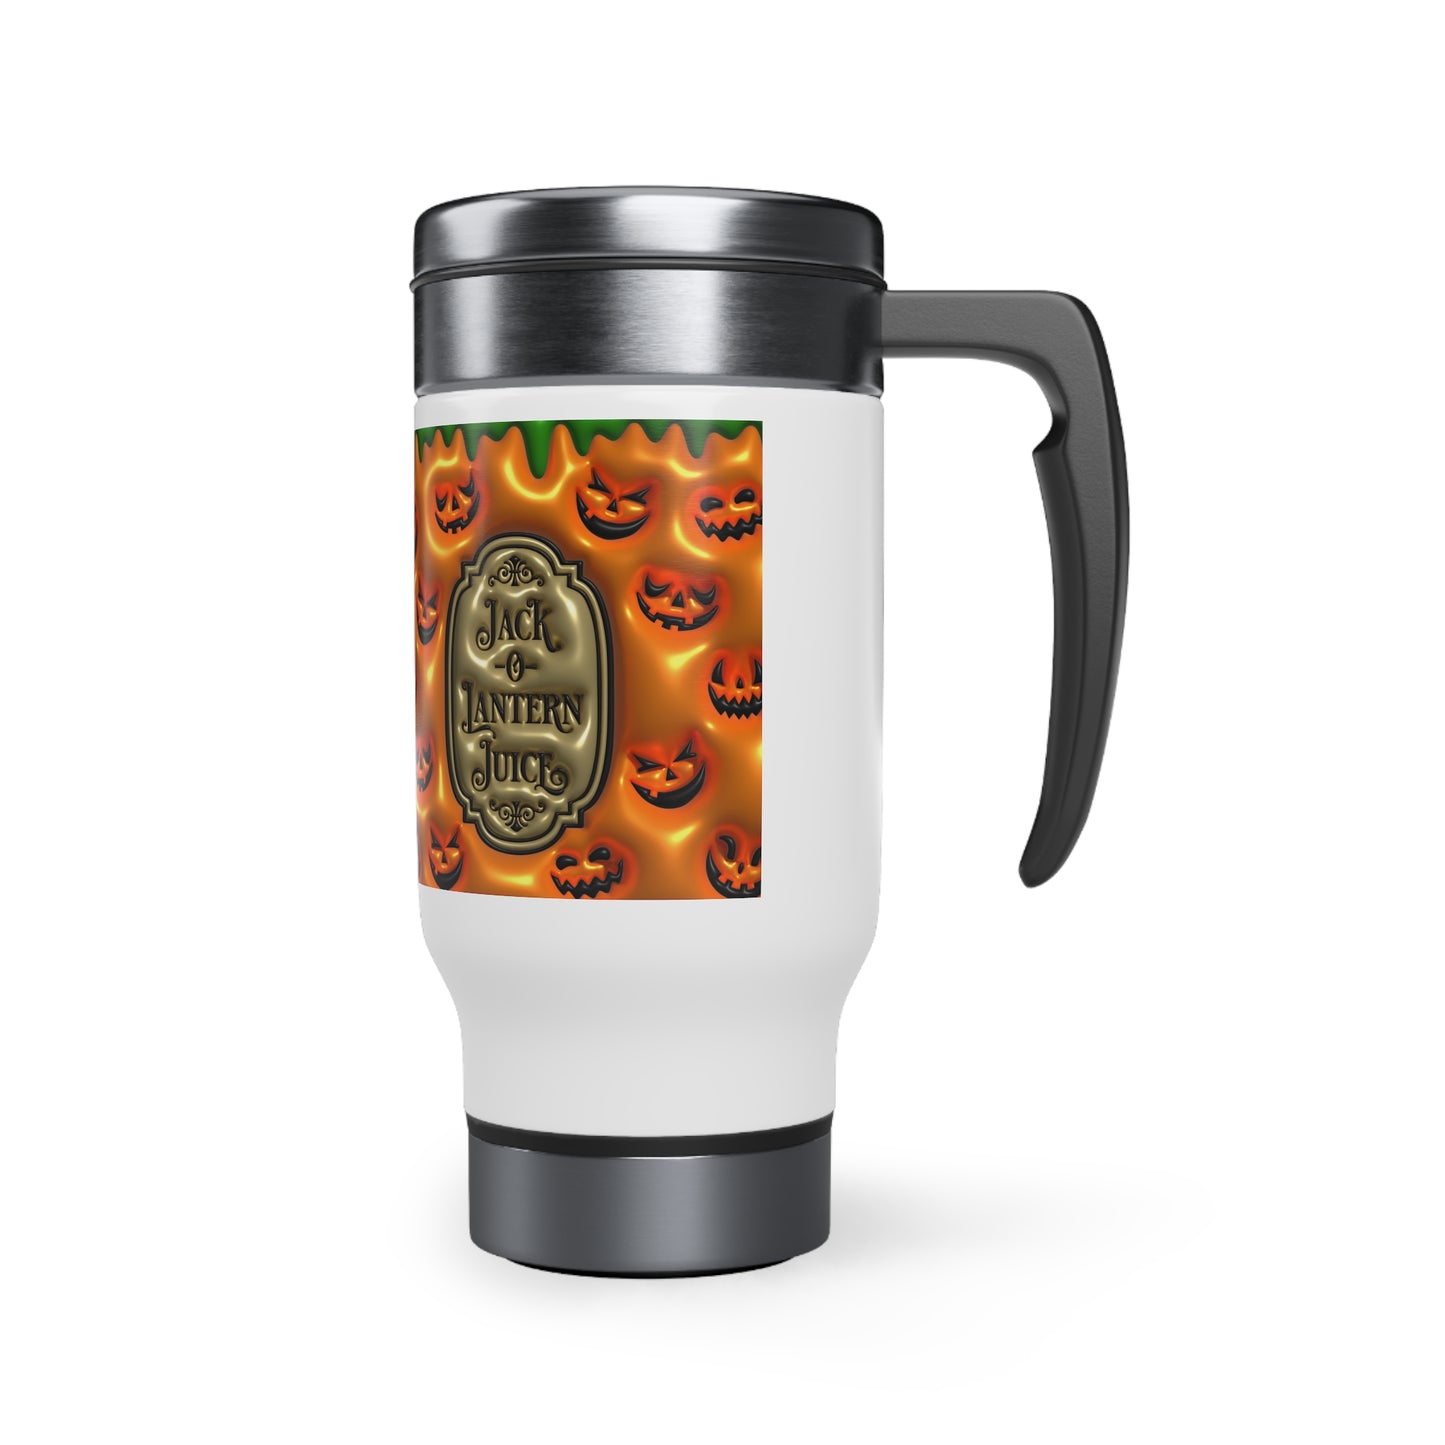 Jack O Lantern Juice Stainless Steel Travel Mug with Handle, 14oz